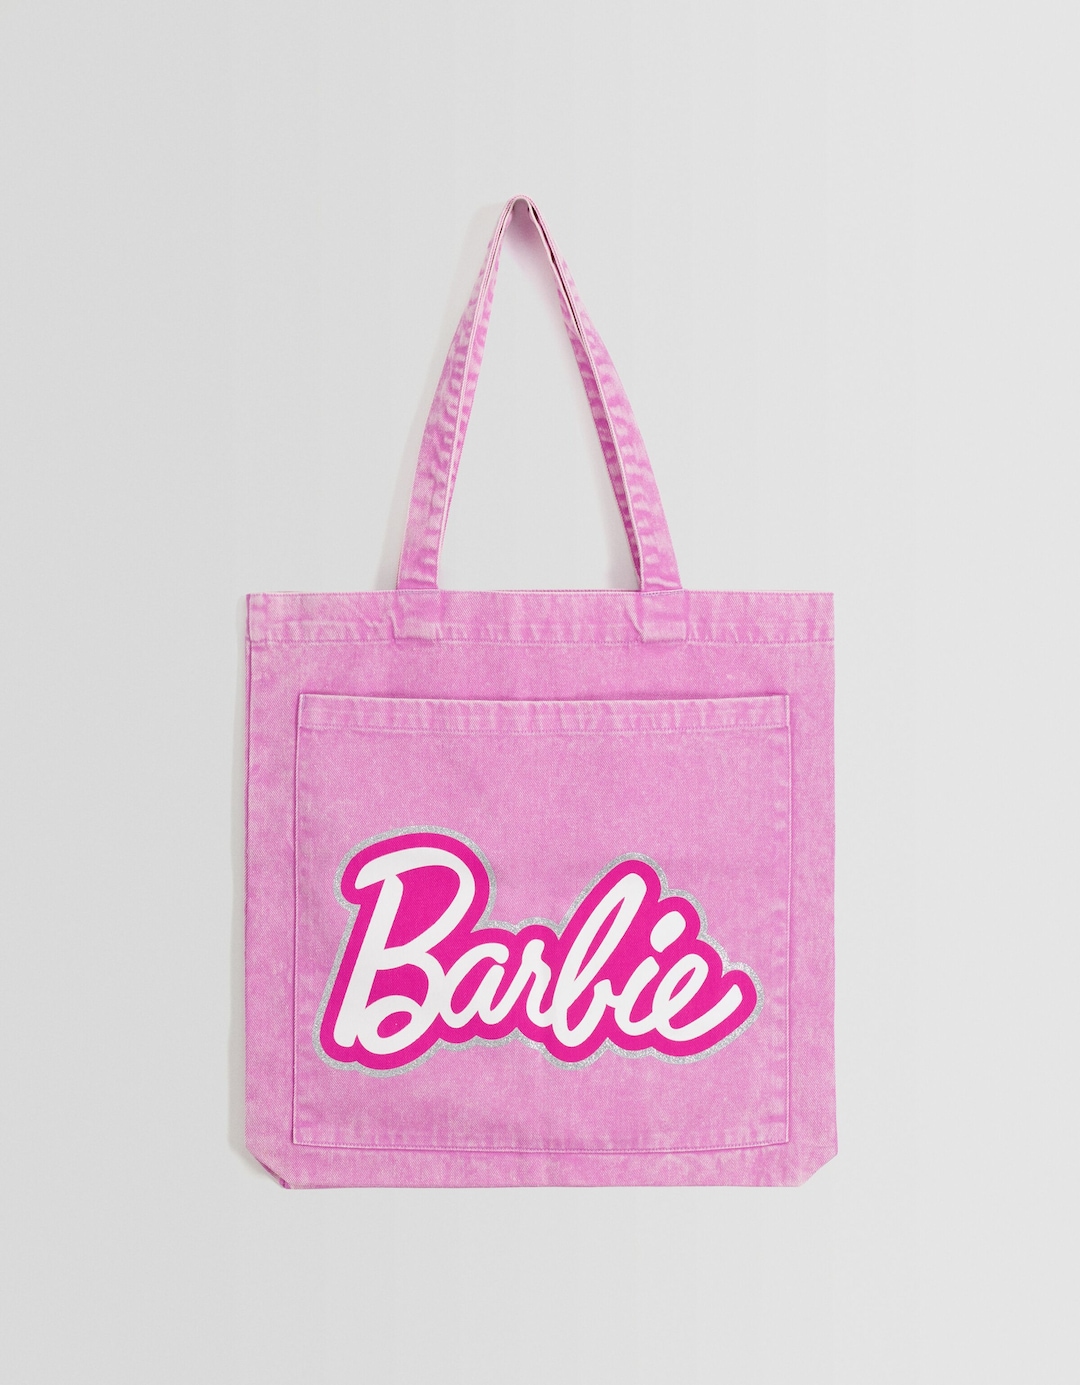 Barbie shopper